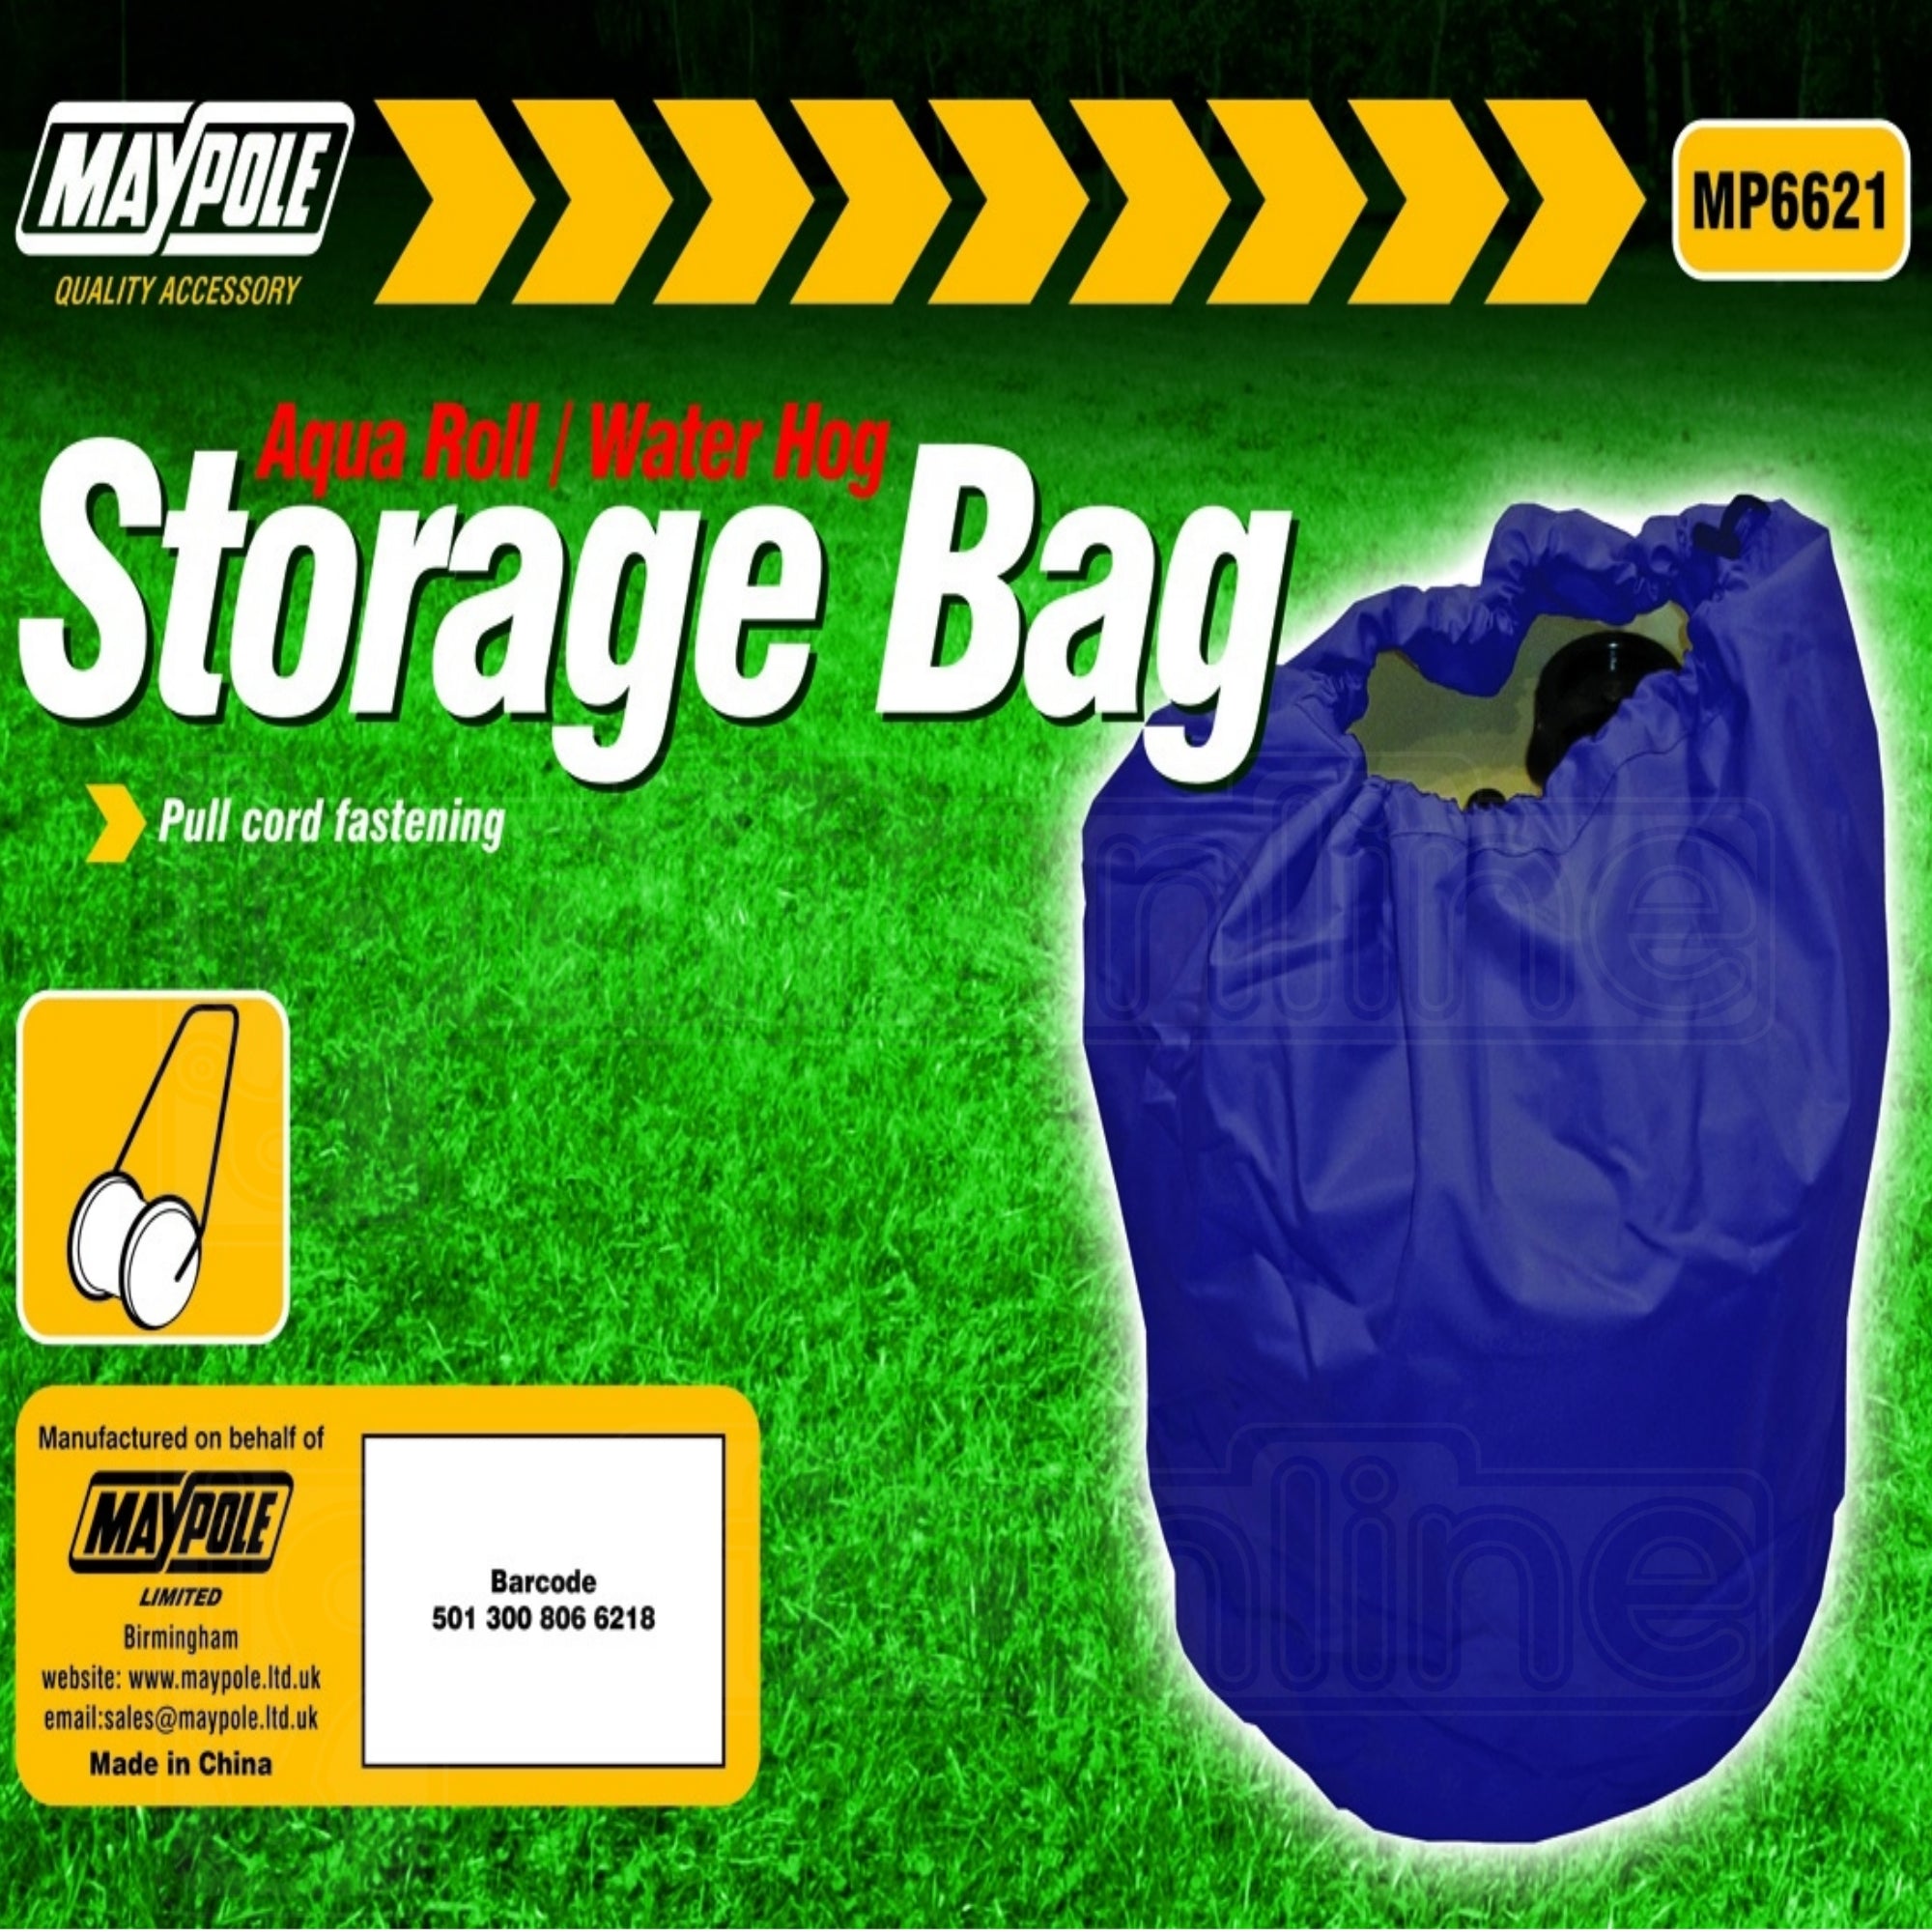 Maypole Aquaroll/ Water Hog Storage Bag